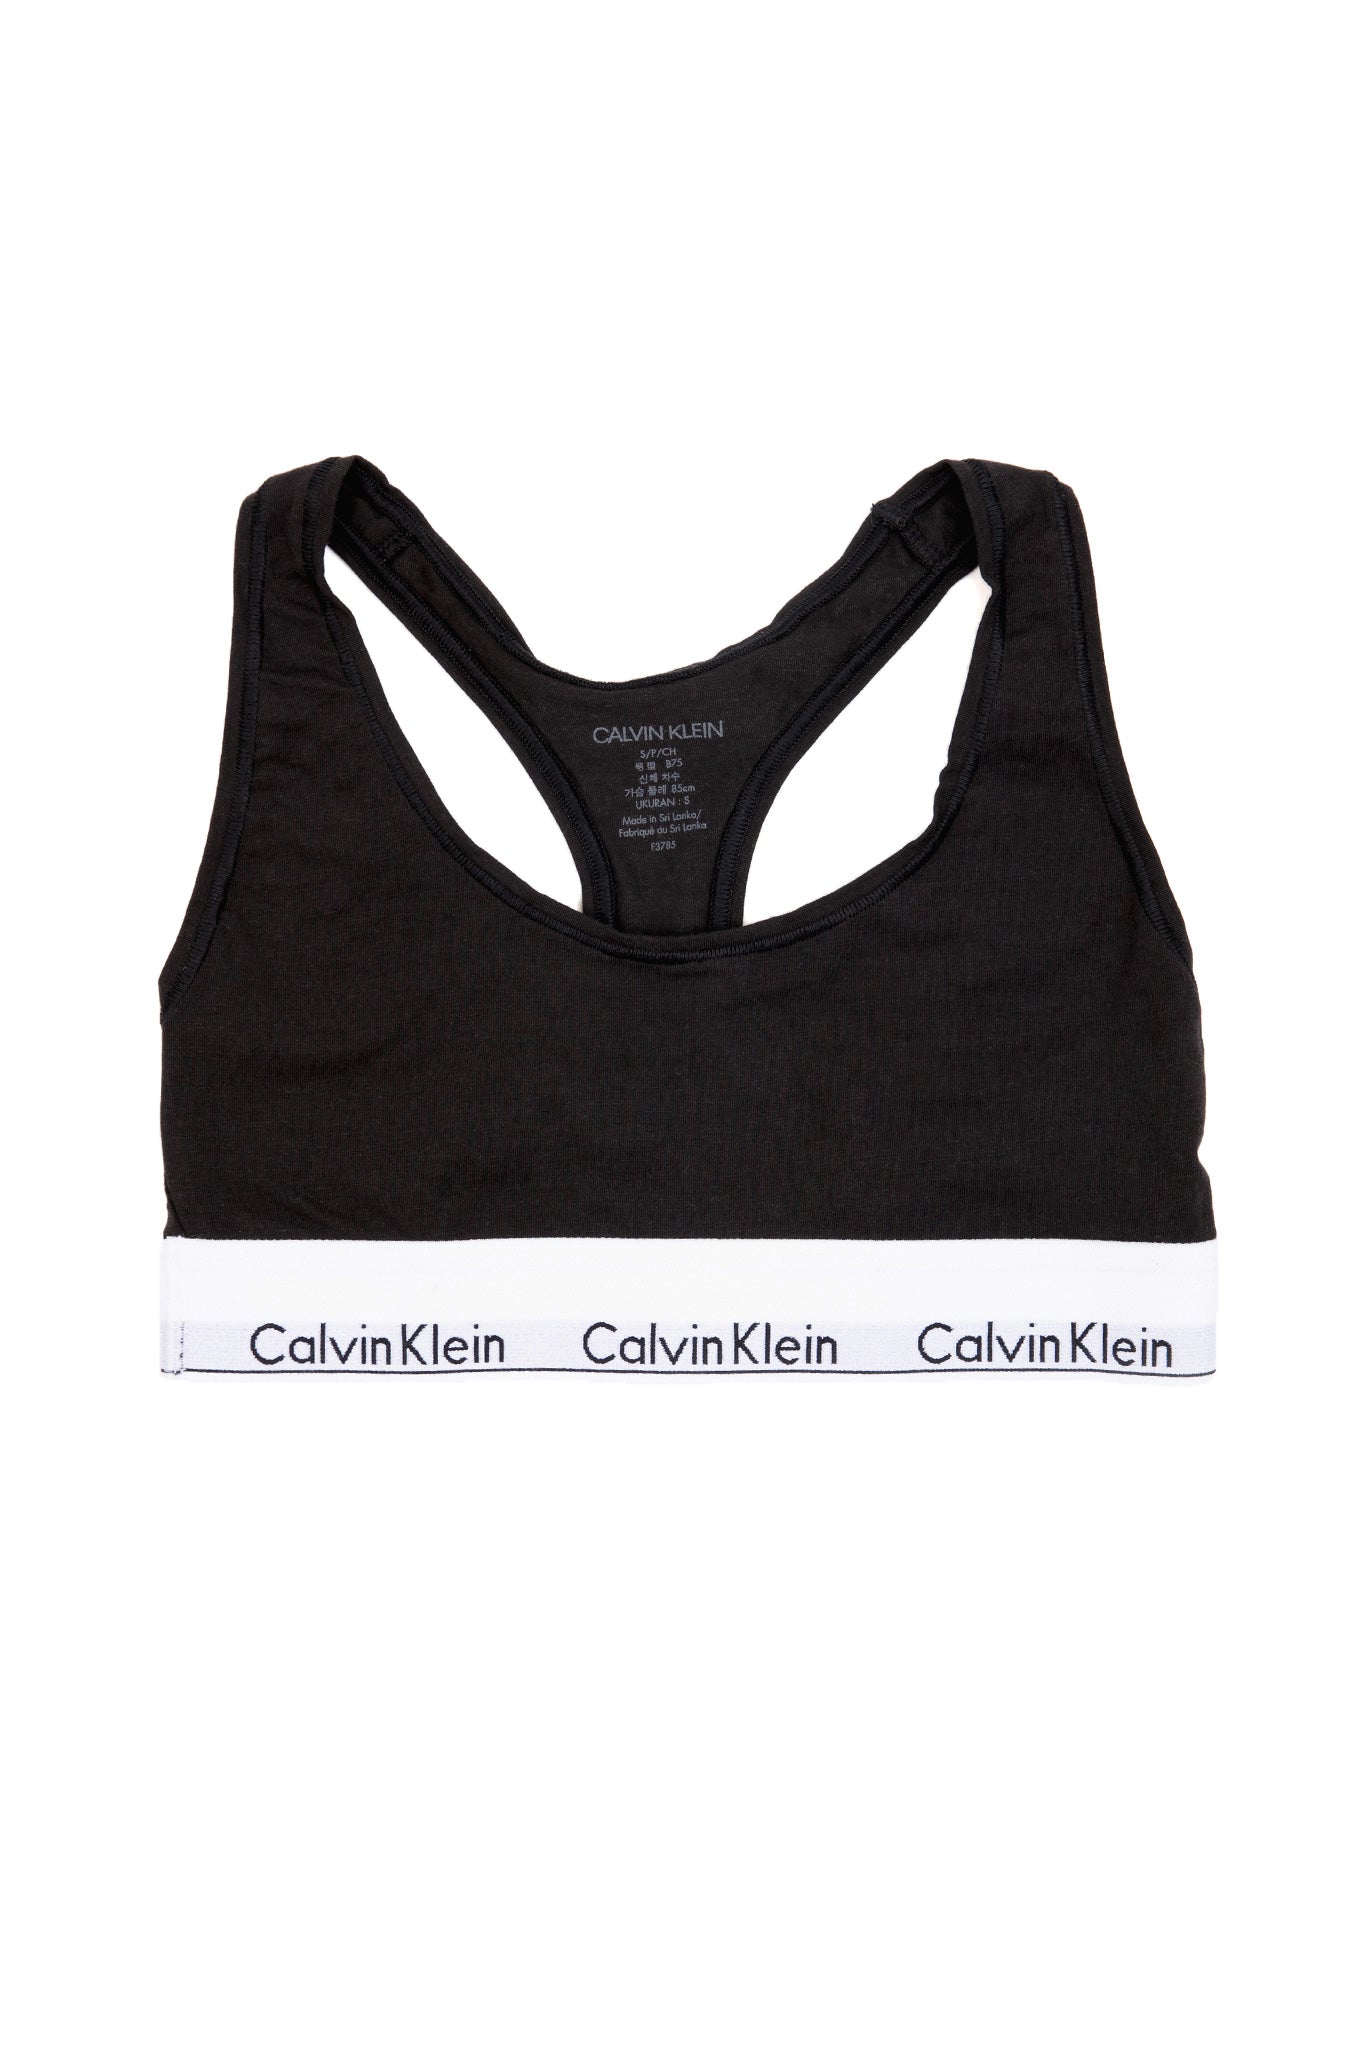 Calvin Klein, Intimates & Sleepwear, Calvin Klein Modern Cotton Pride  Black Unlined Bralette Large